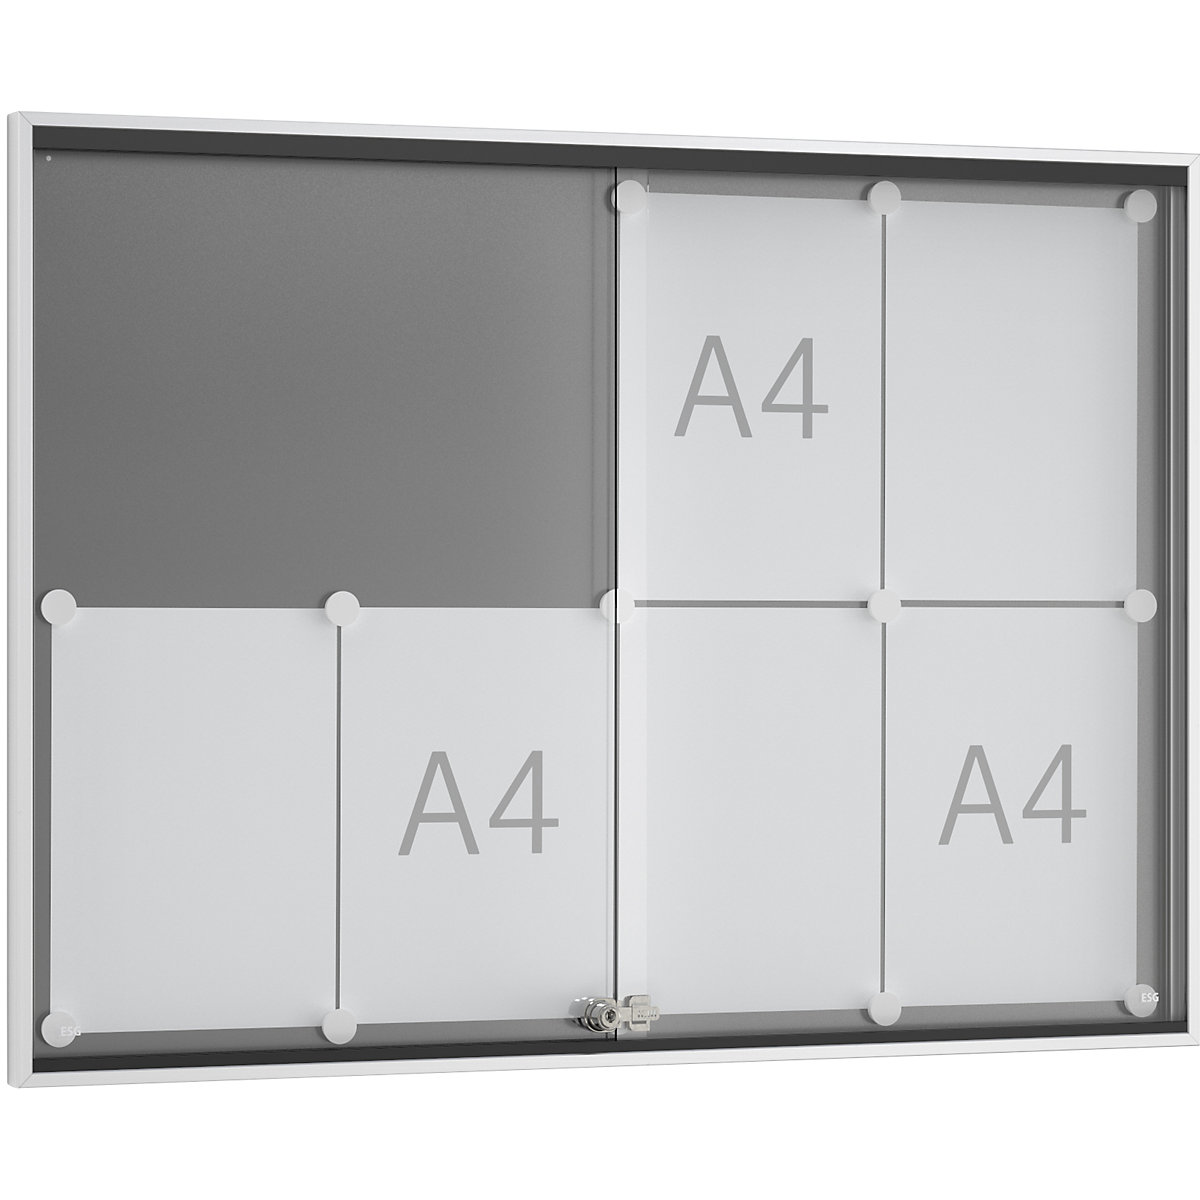 Sliding door display case, external depth 30 mm, B1